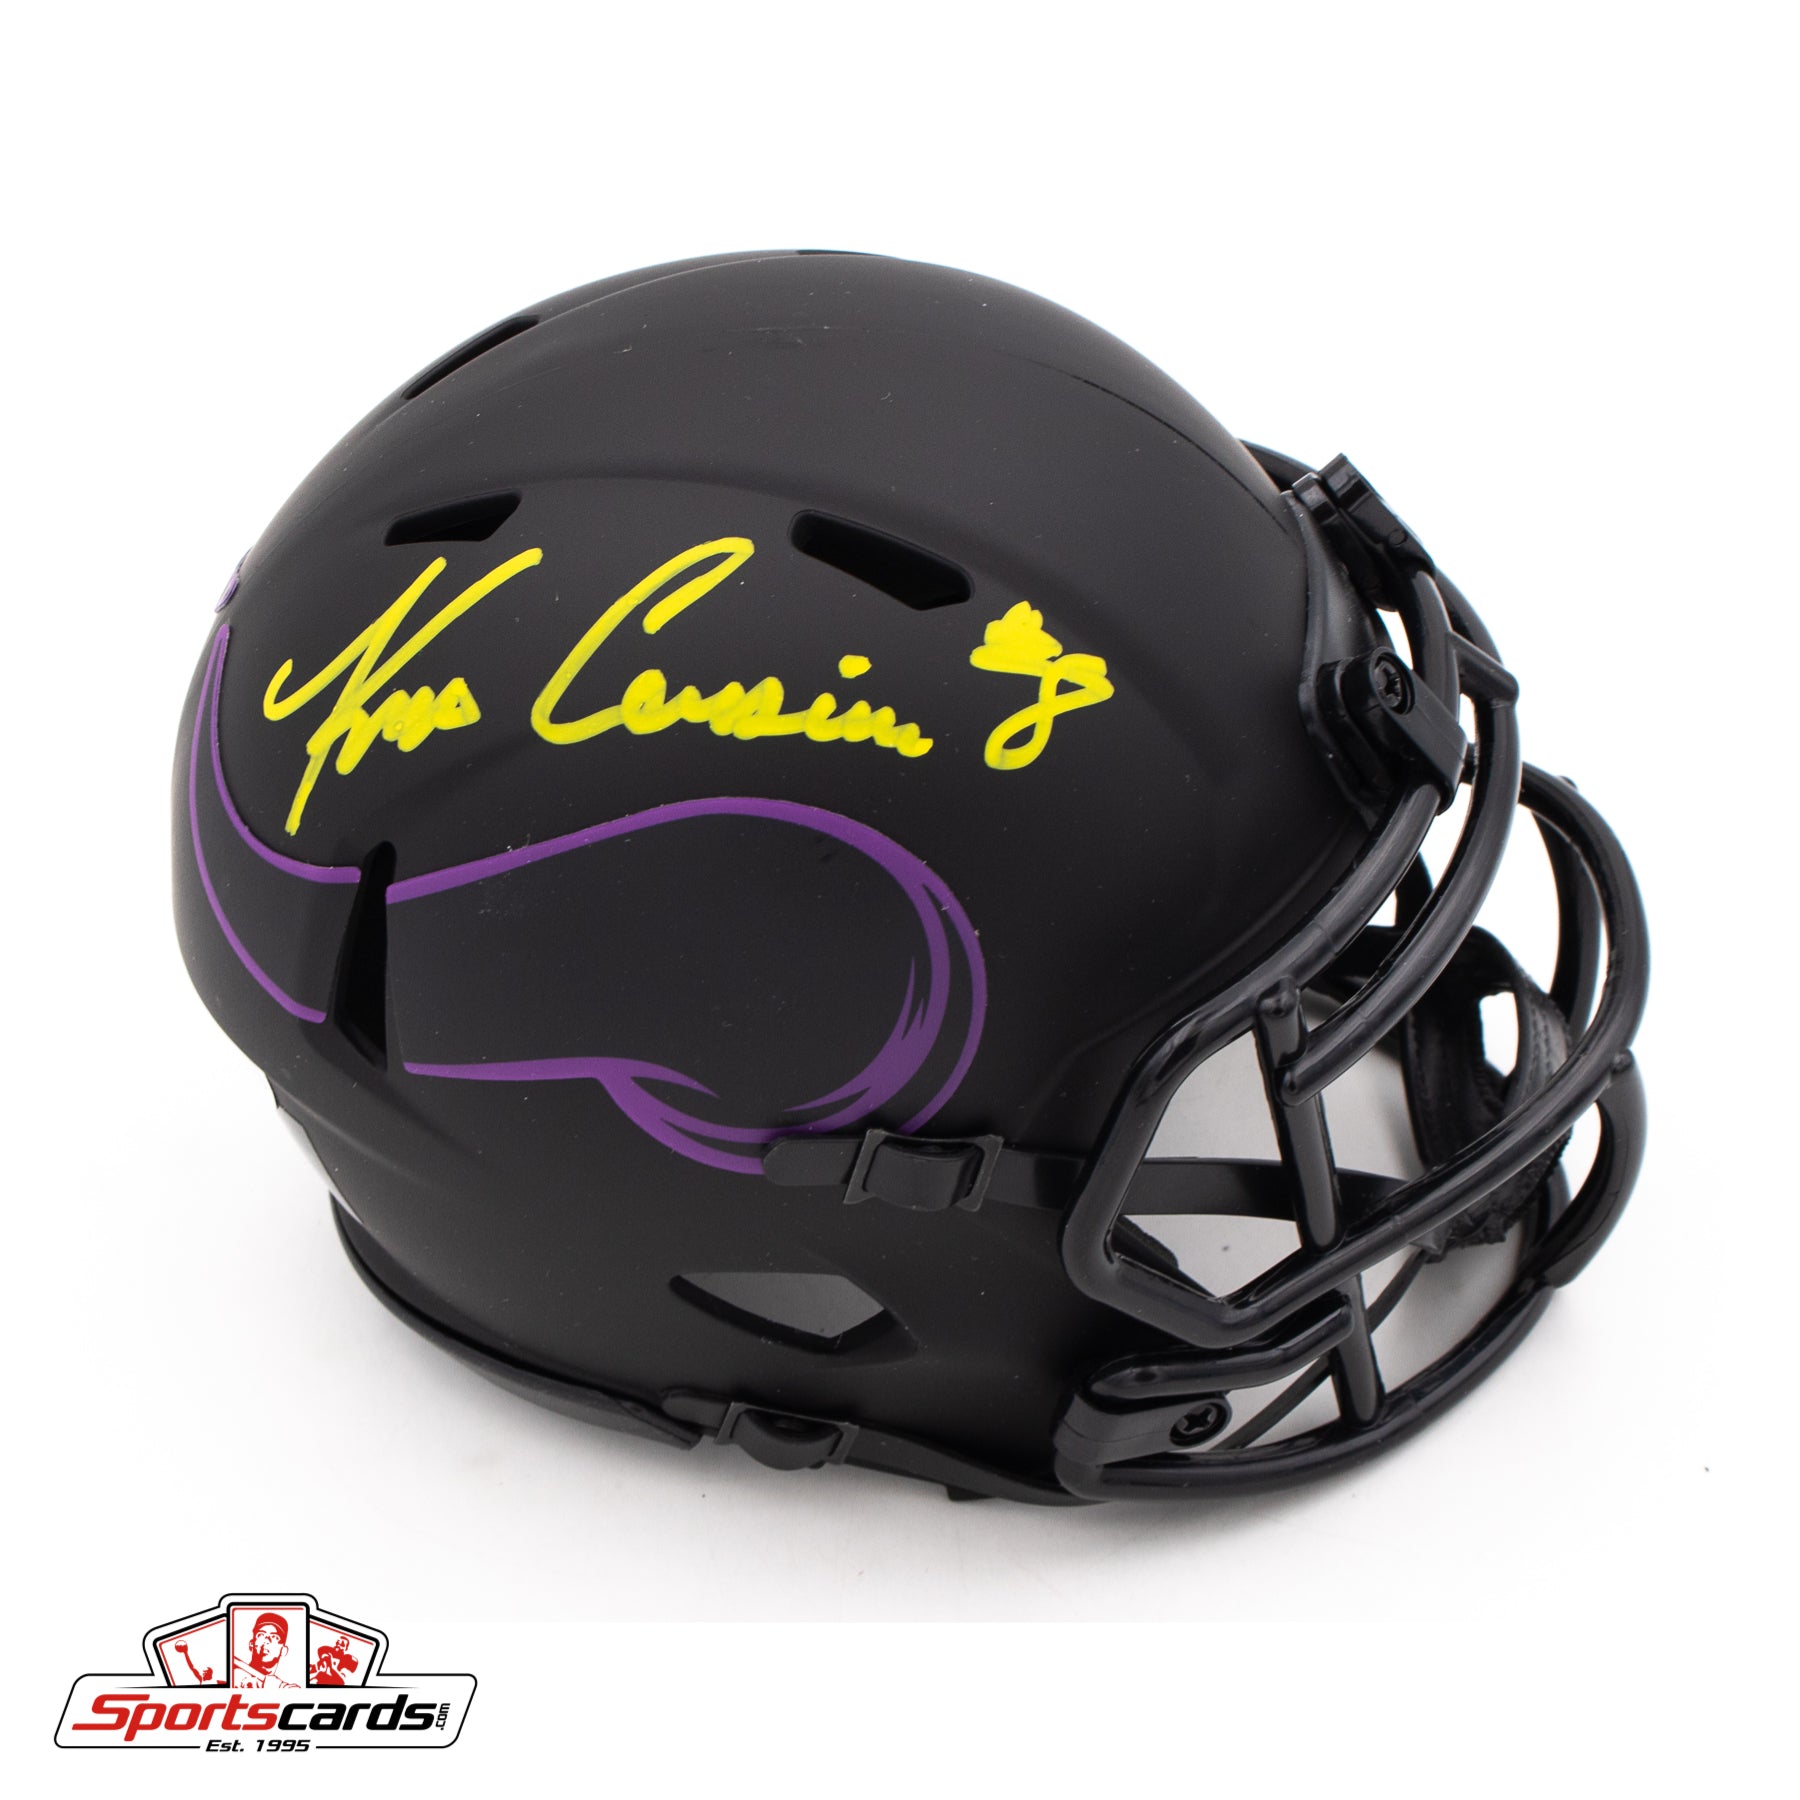 Kirk Cousins Signed Autographed Minnesota Vikings Eclipse Mini Helmet BAS Witness COA